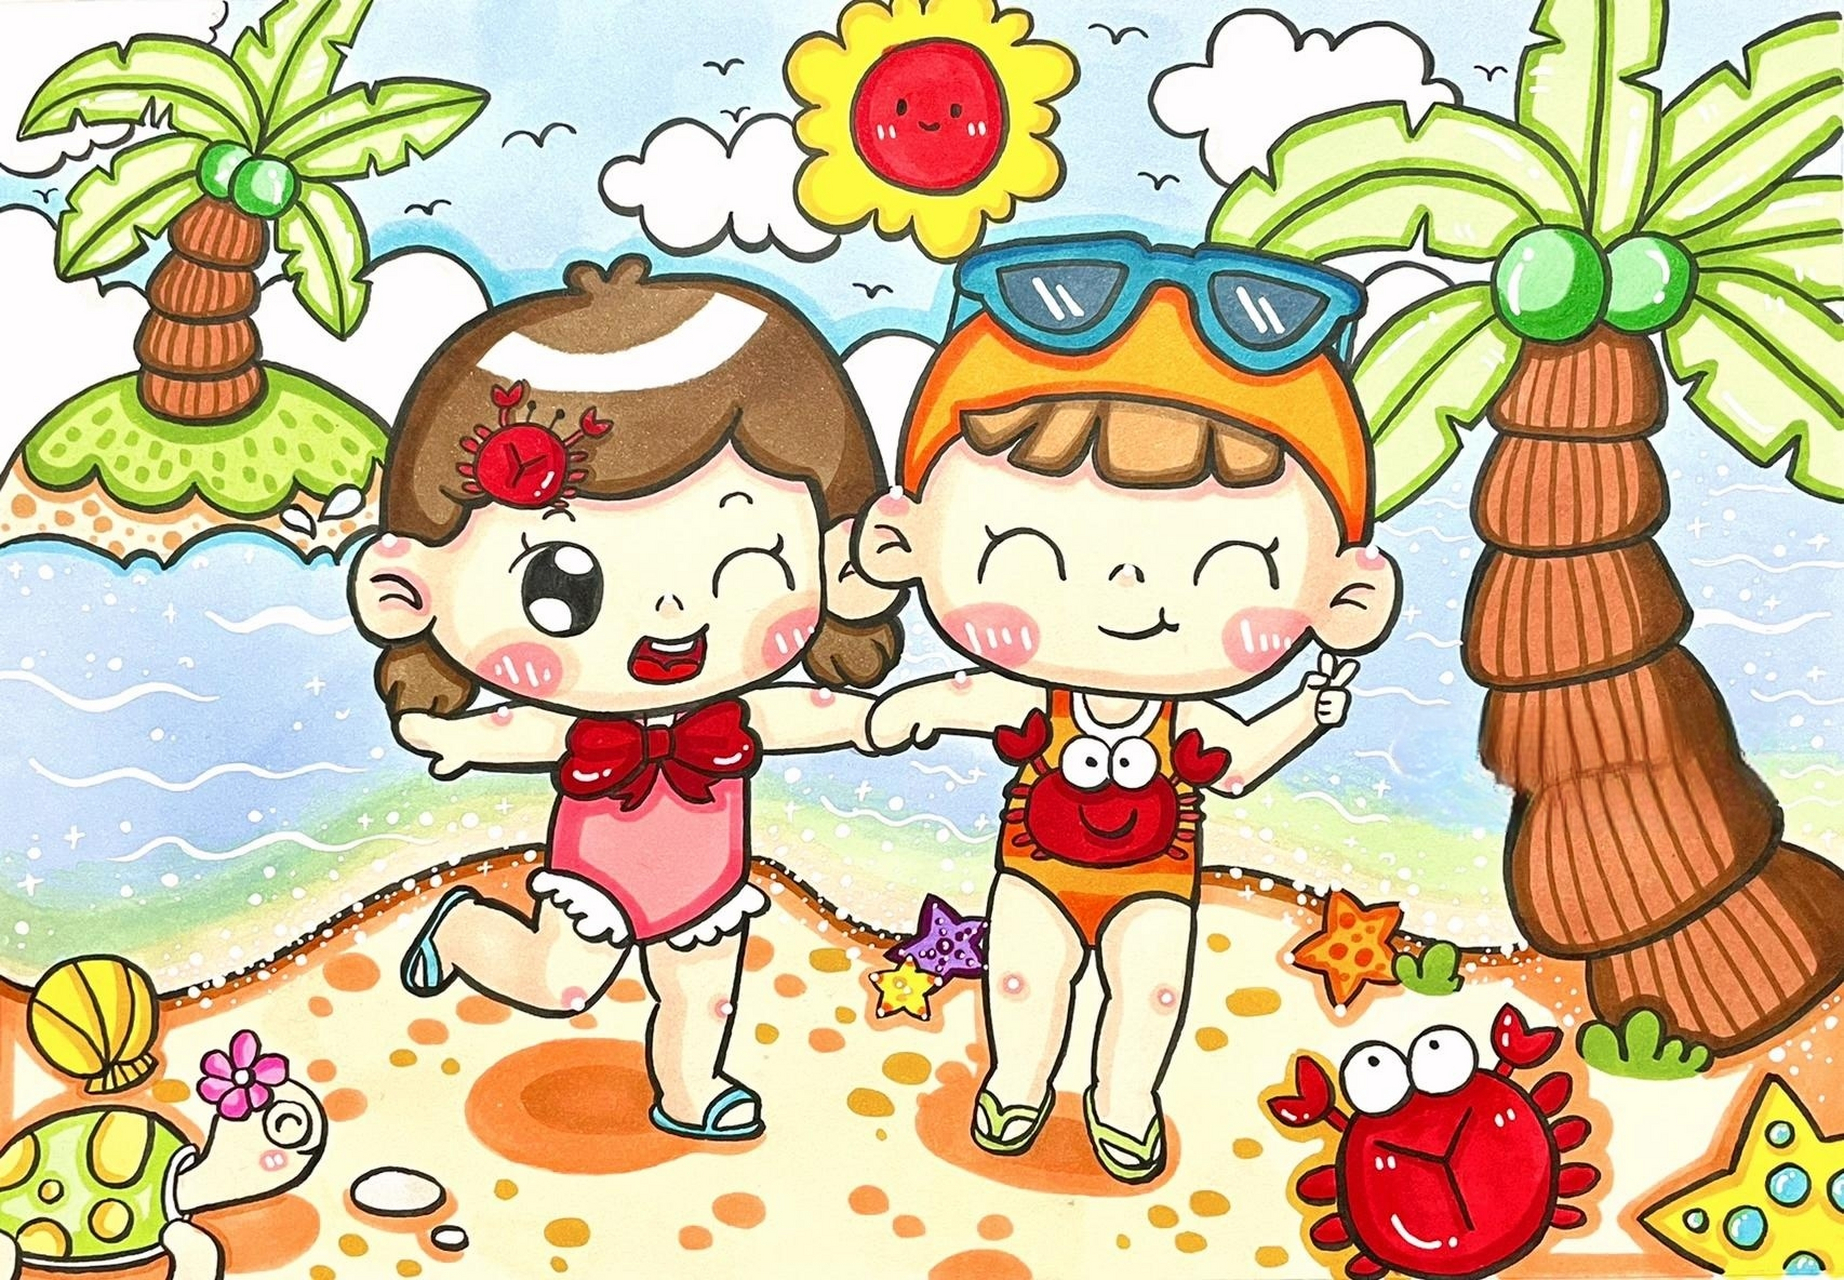 儿童画 沙滩主题儿童画 炎热夏季马上到来啦 一幅夏日沙滩画 临汤圆